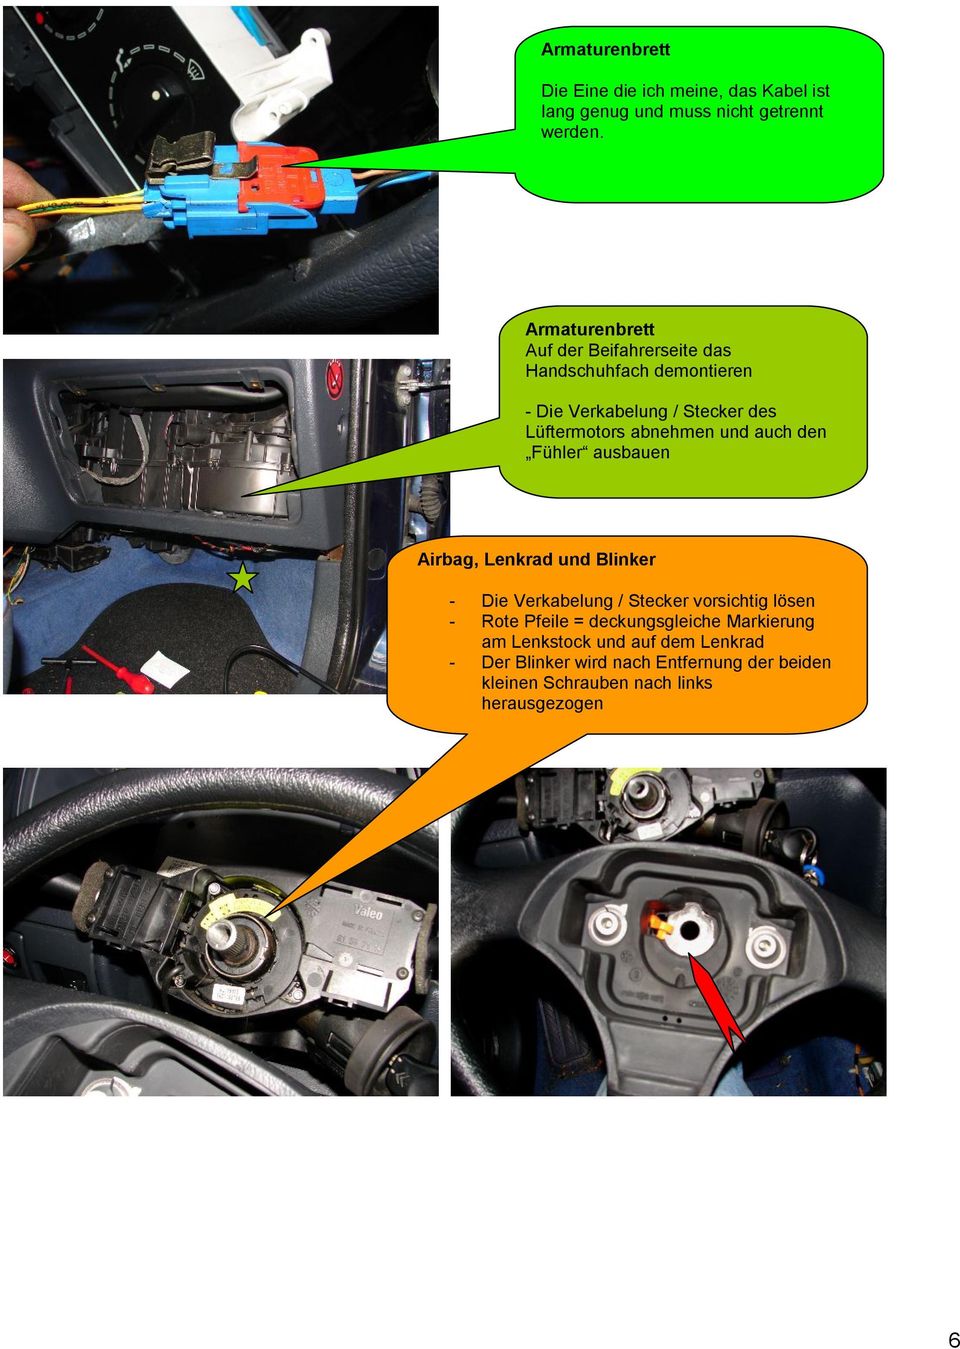 und auch den Fühler ausbauen Airbag, Lenkrad und Blinker - Die Verkabelung / Stecker vorsichtig lösen - Rote Pfeile =